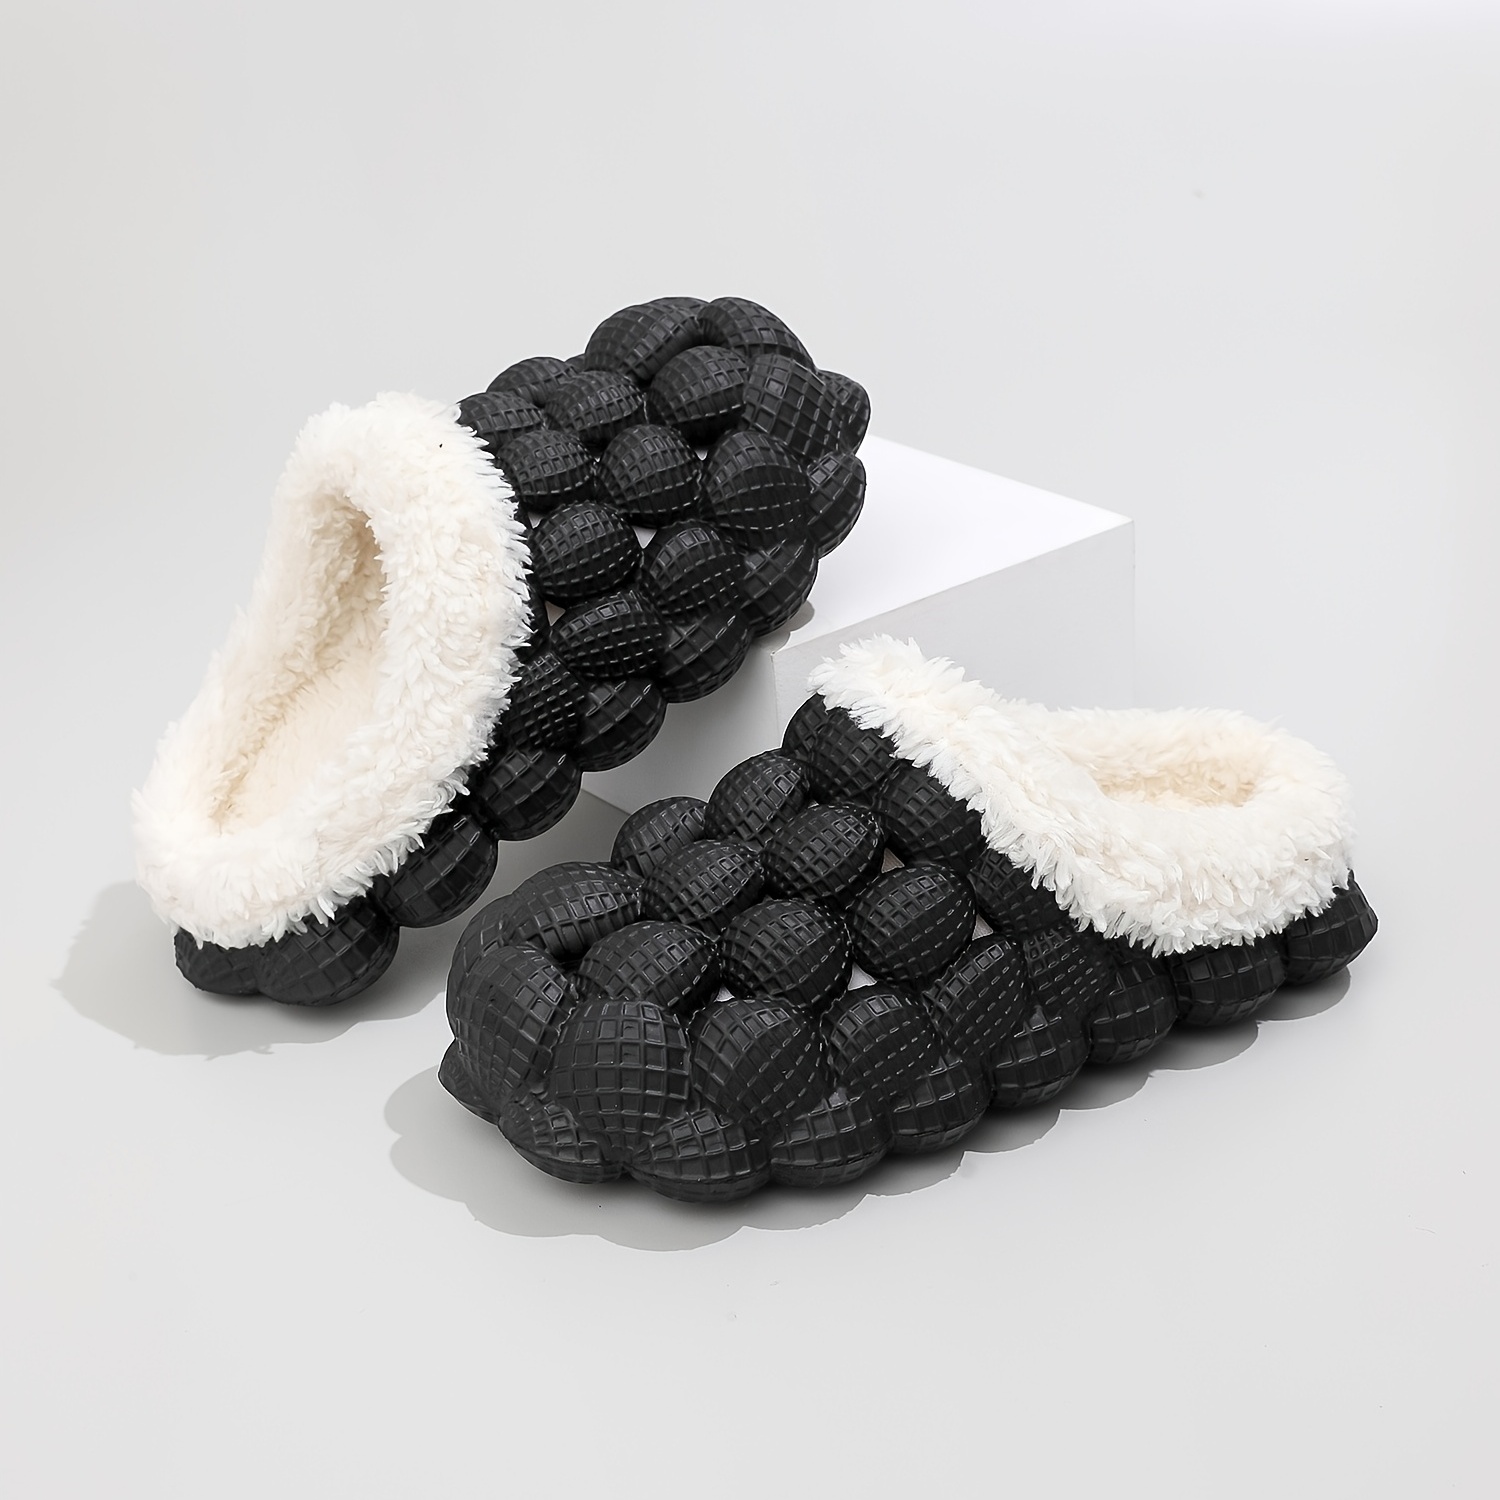 Zapatilla de invierno hombre casa zapatos cálidos de felpa toboganes unisex  interior casa zapatos de algodón plana confort mujeres zuecos zapatillas  envío gratis